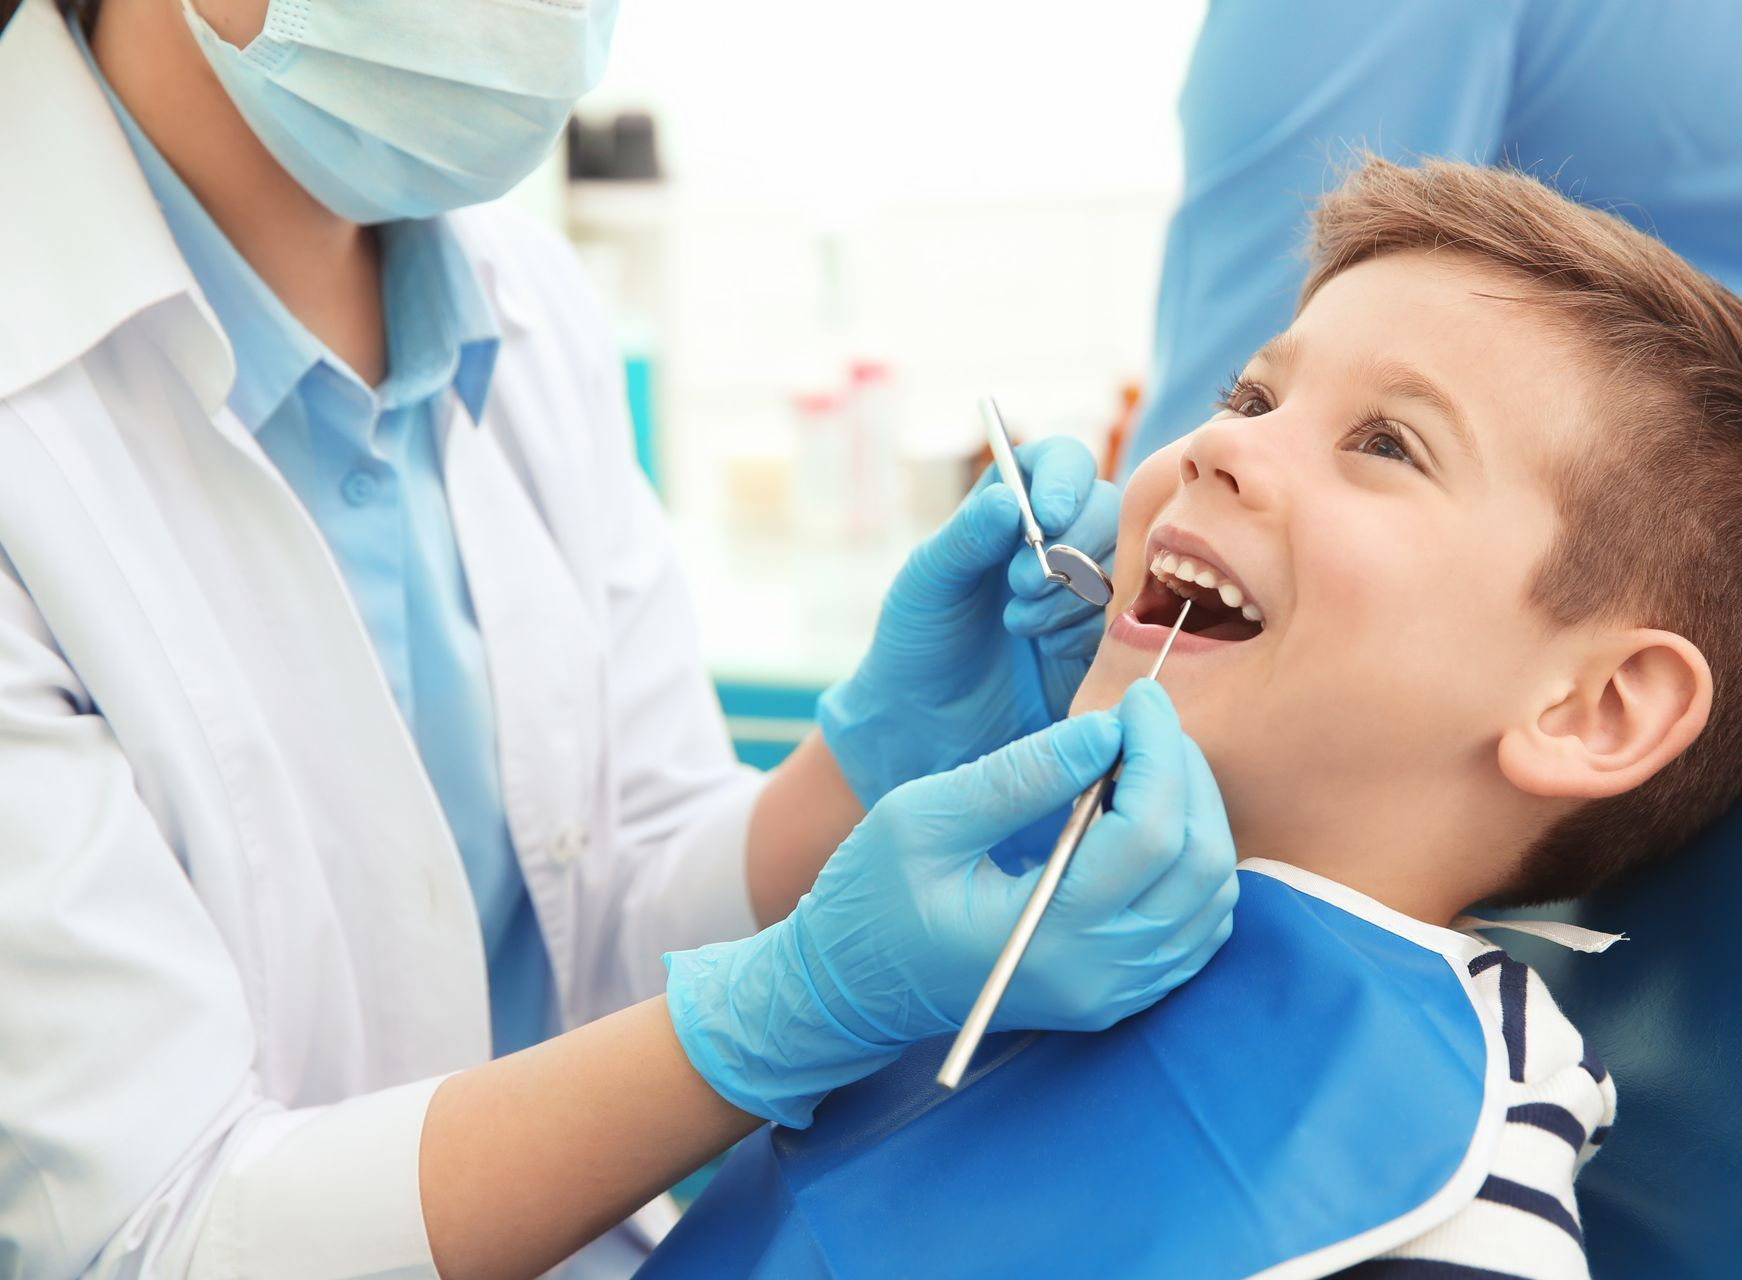 Contrôle des dents d'un enfant par un dentiste.